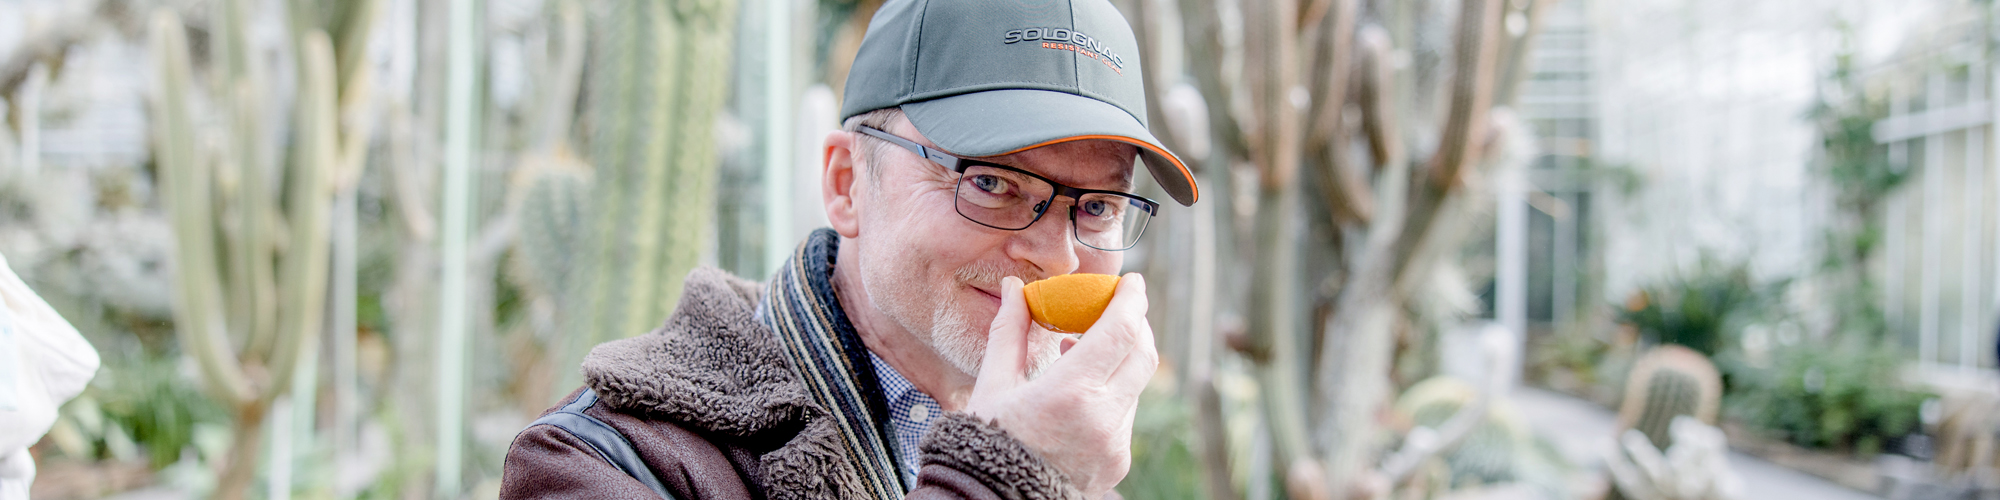 Mann mit Kappe und Brille riecht in einem Gewächshaus an einer orangefarbenen Frucht 